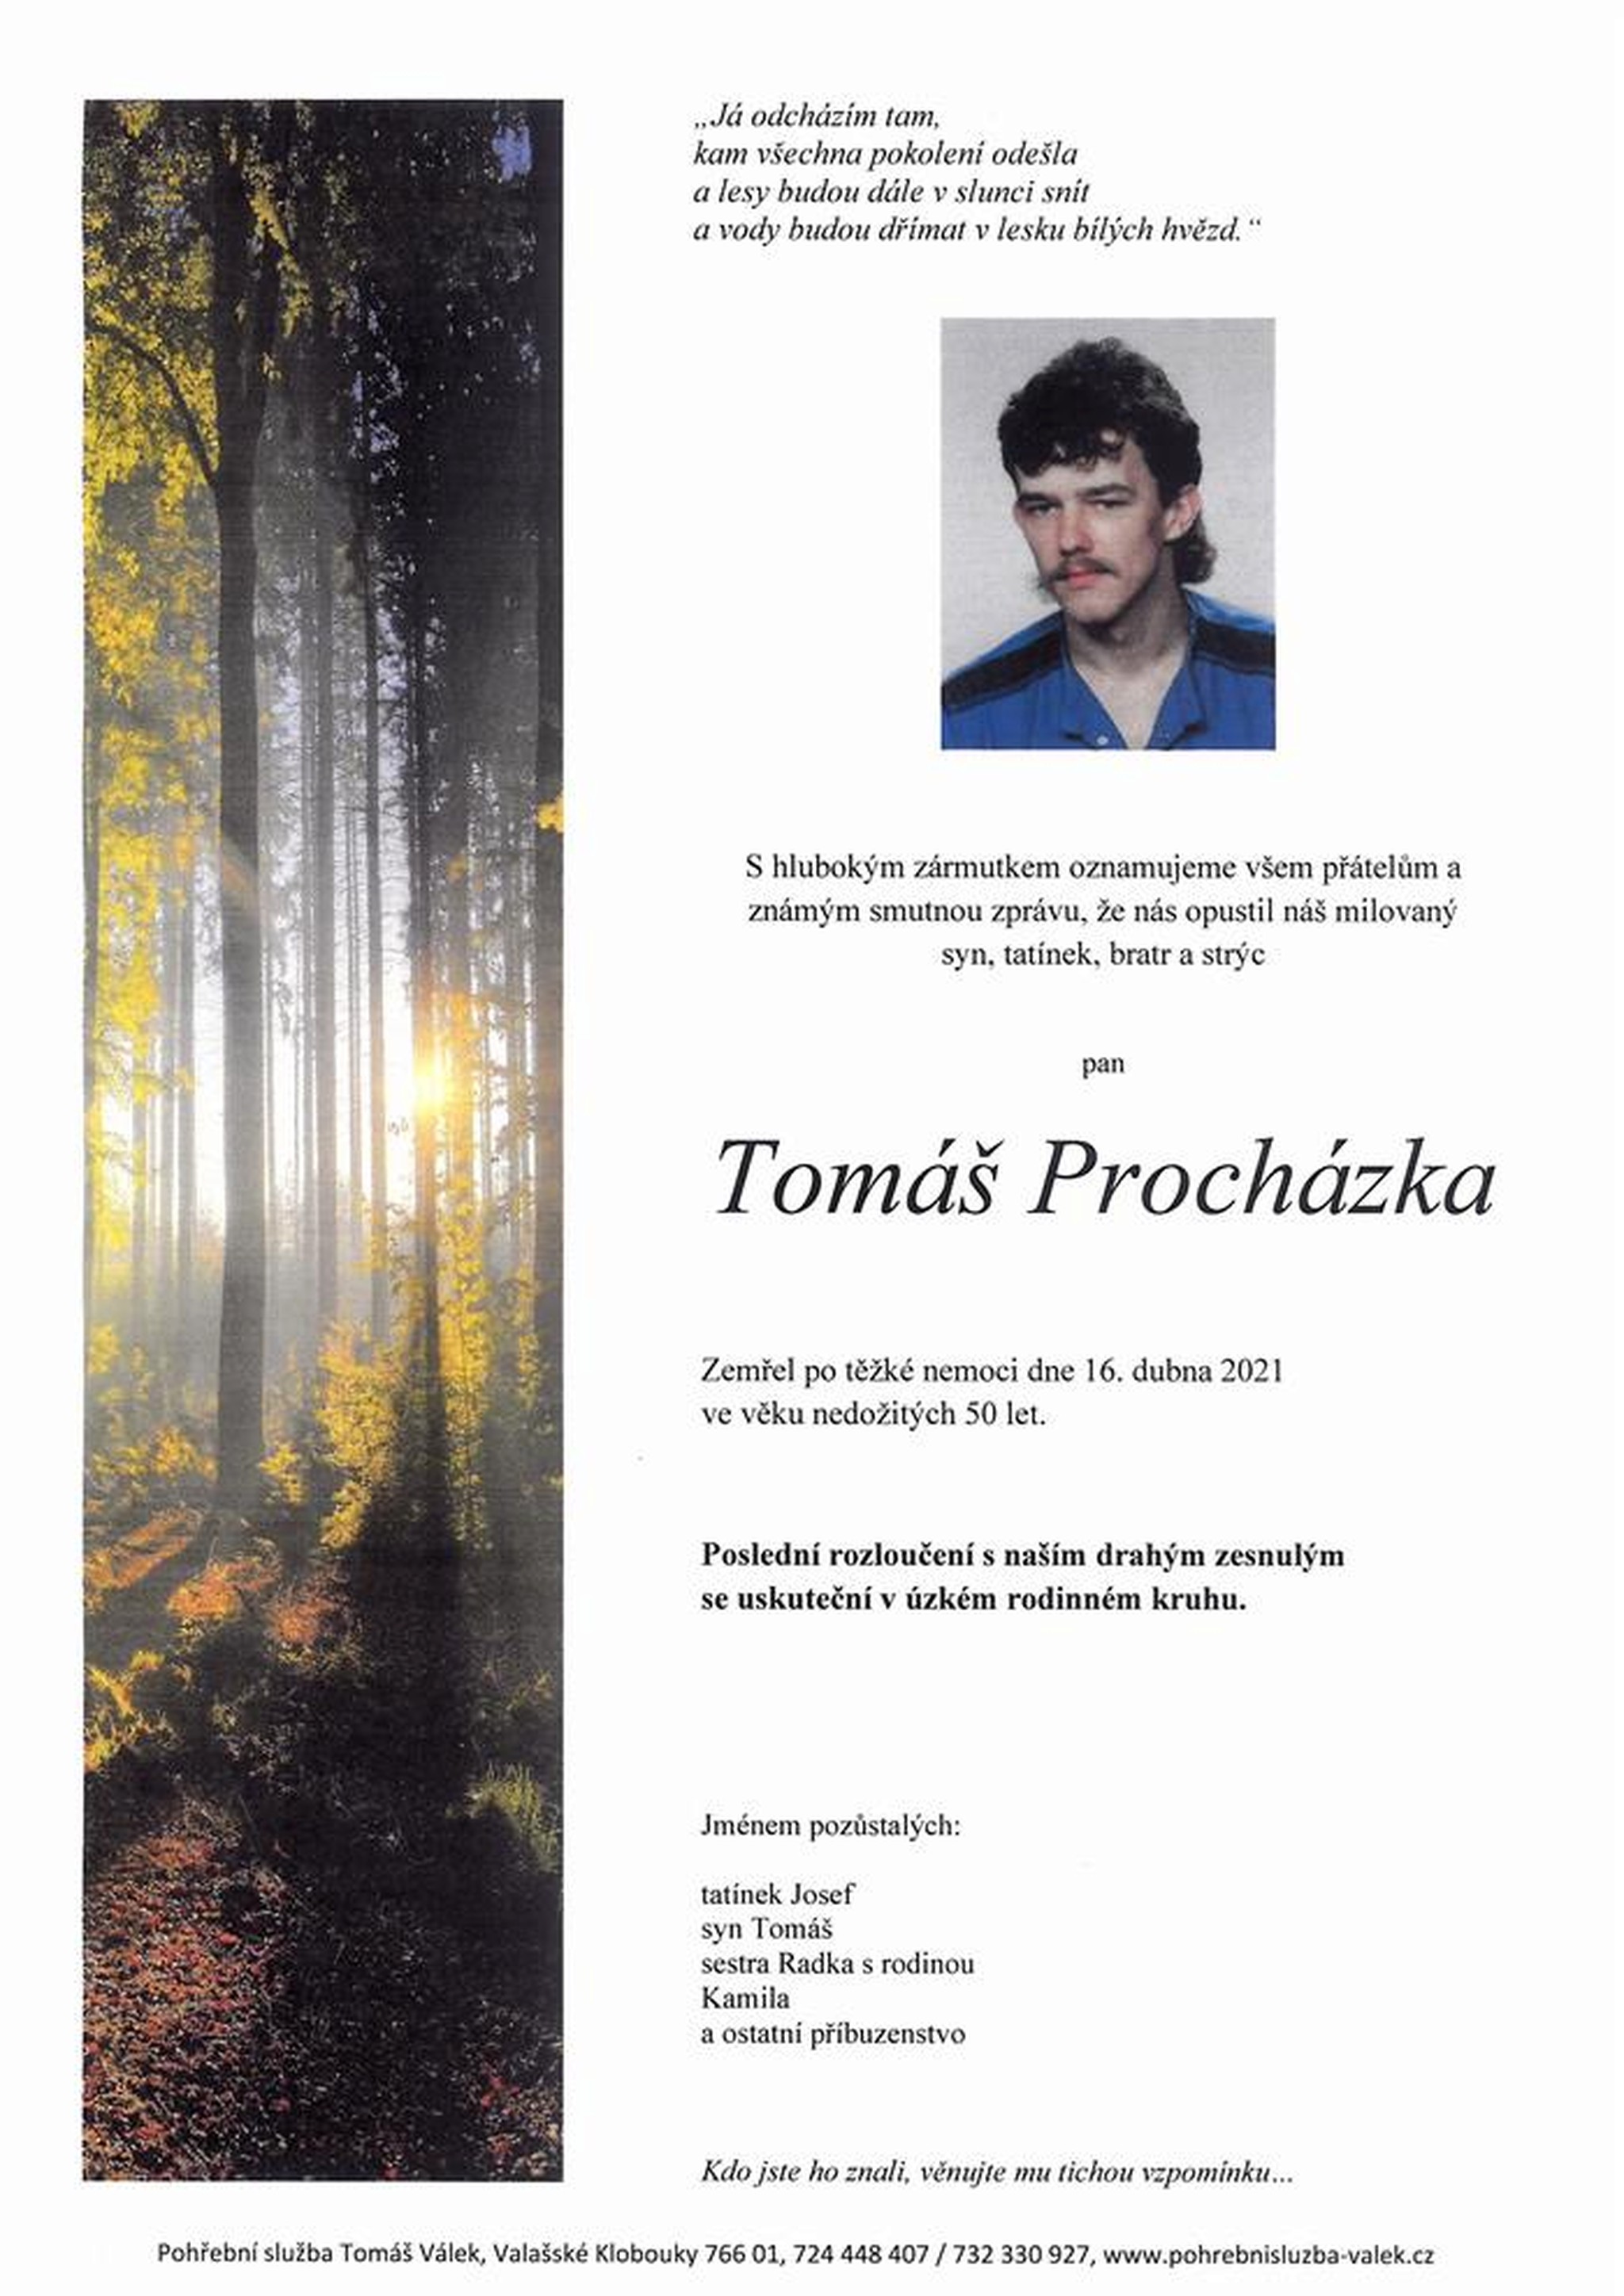 Tomáš Procházka